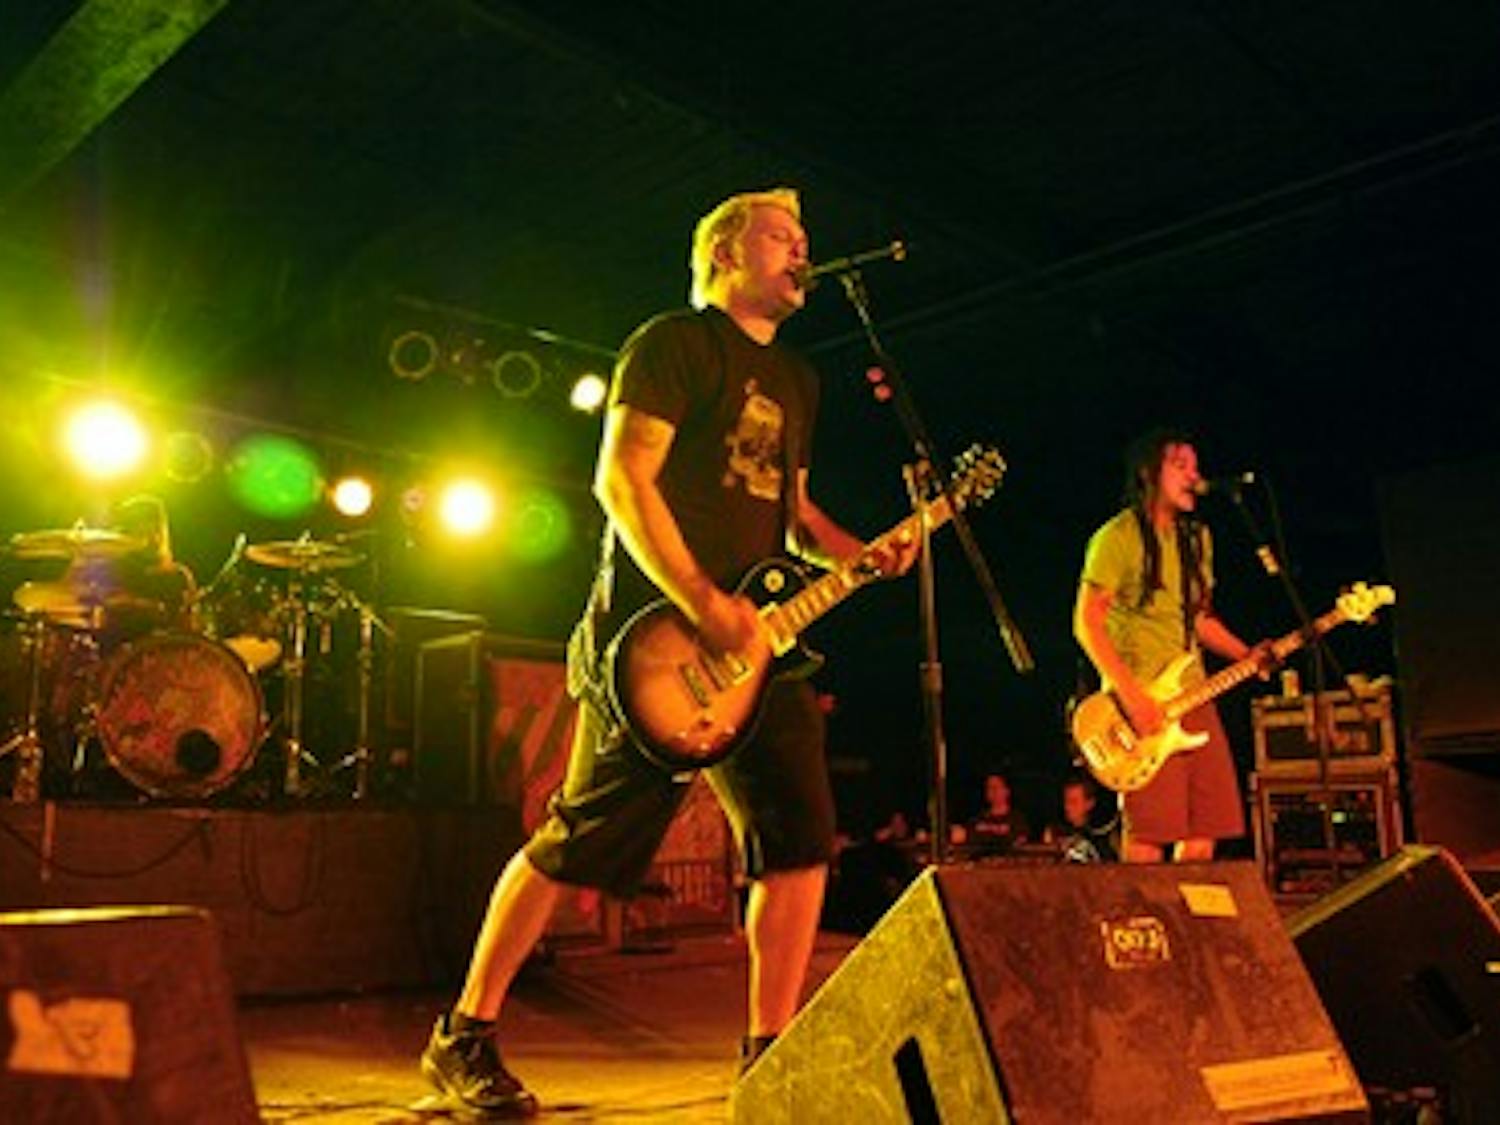 The ska-punk band Less Than Jake performs at The Masquerade in Atlanta.